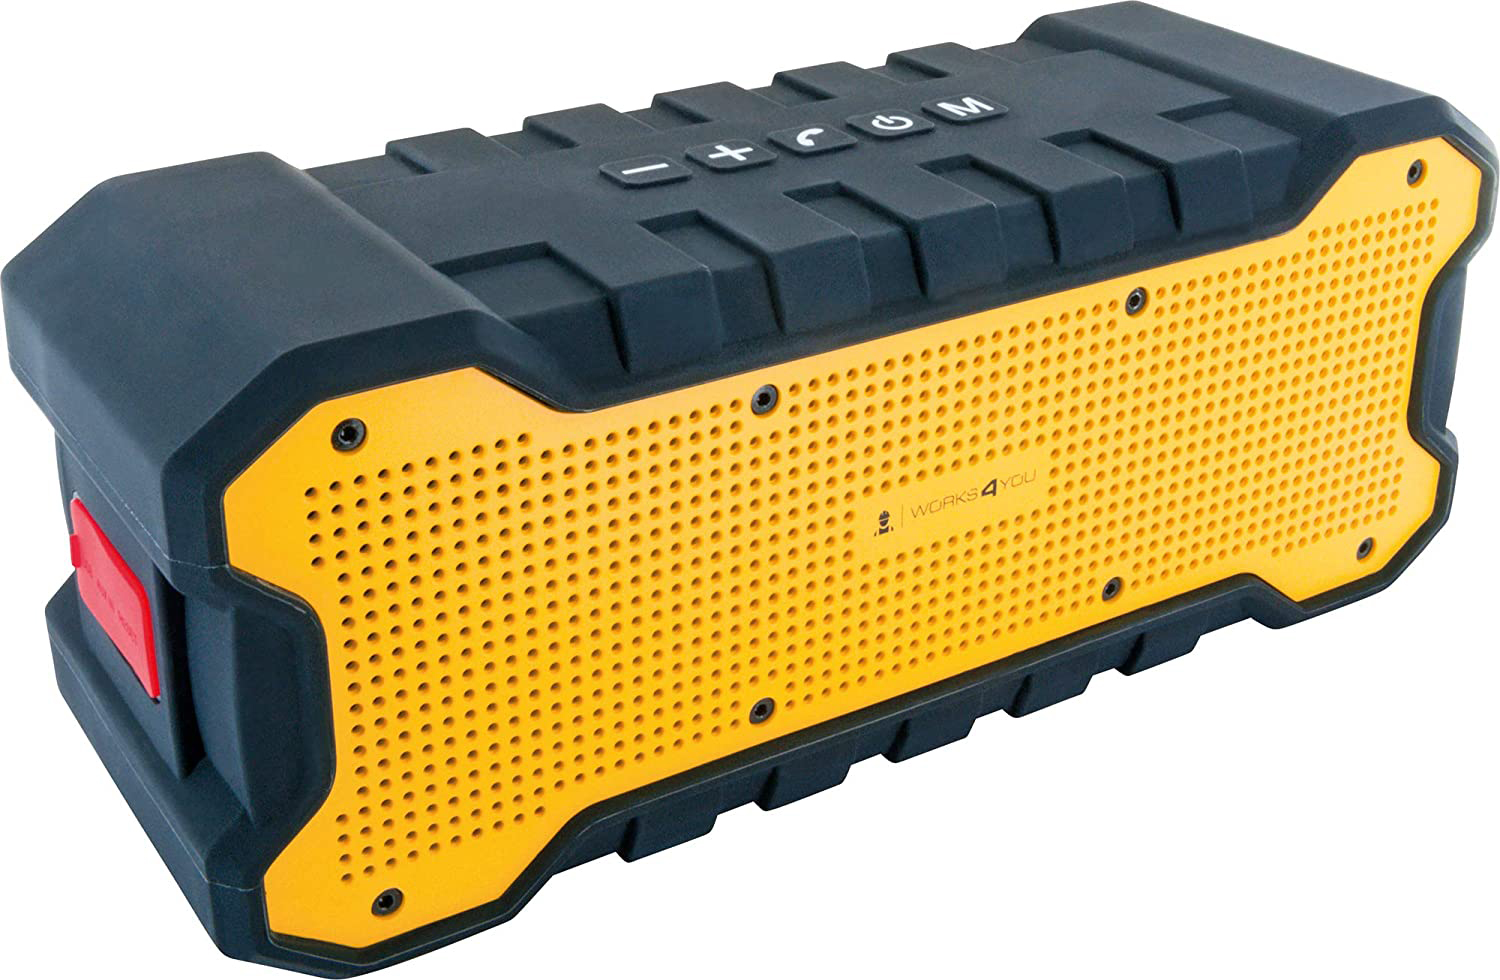 SCHWAIGER -WKLS100 511- Bluetooth x (2 Lautsprecher Schwarz/Gelb) IP67 W, 6 zertifiziert